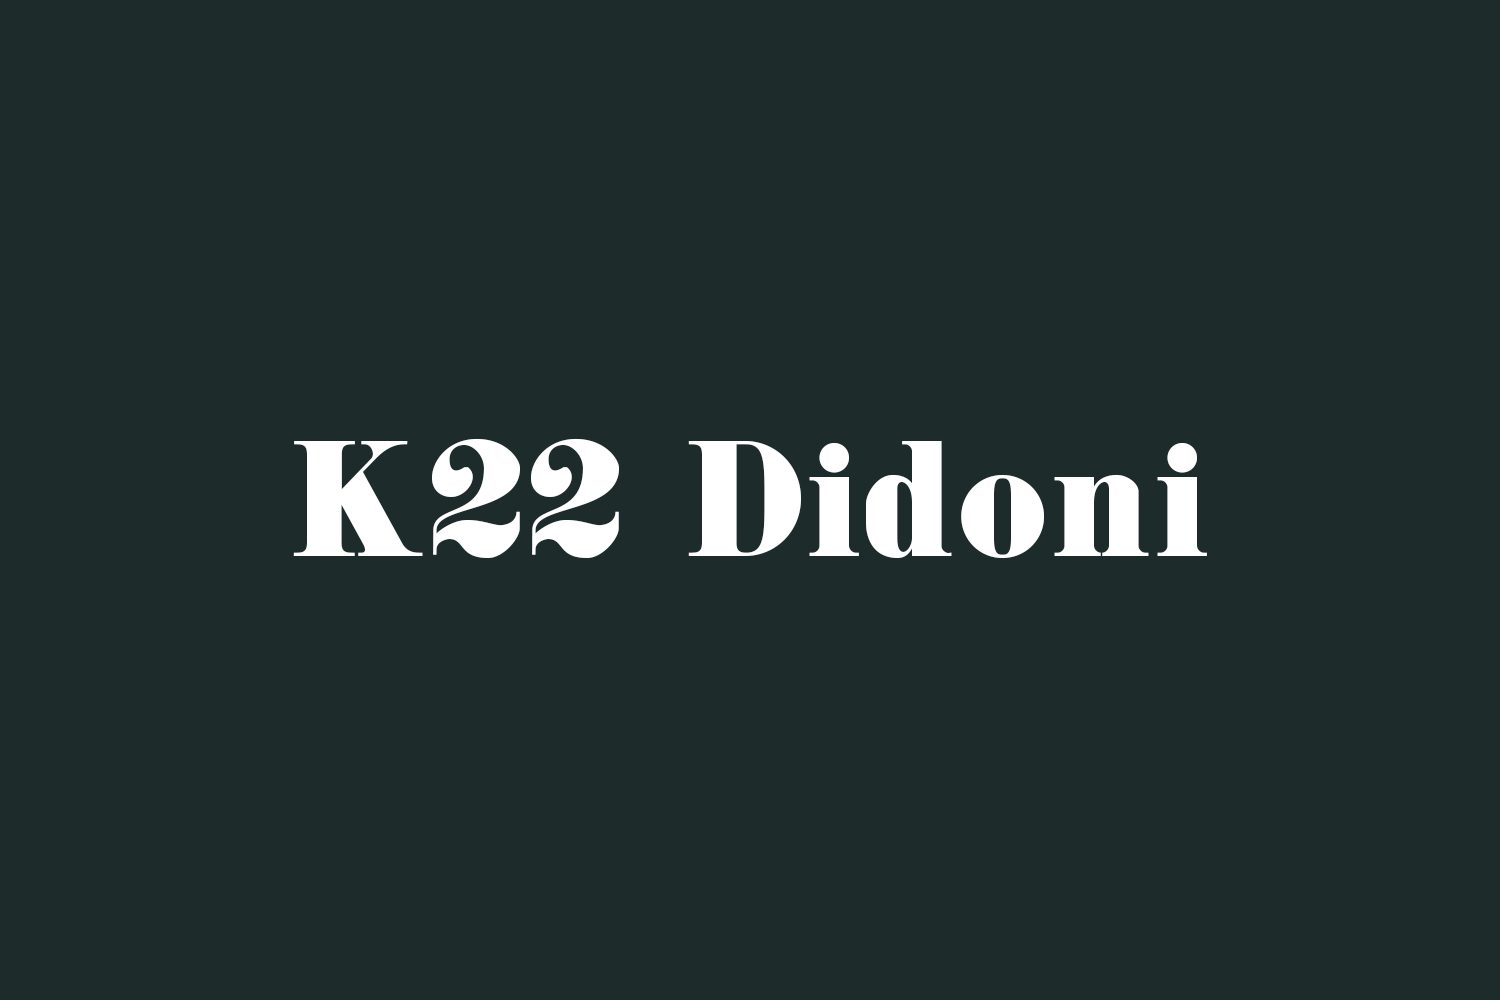 K22 Didoni Free Font